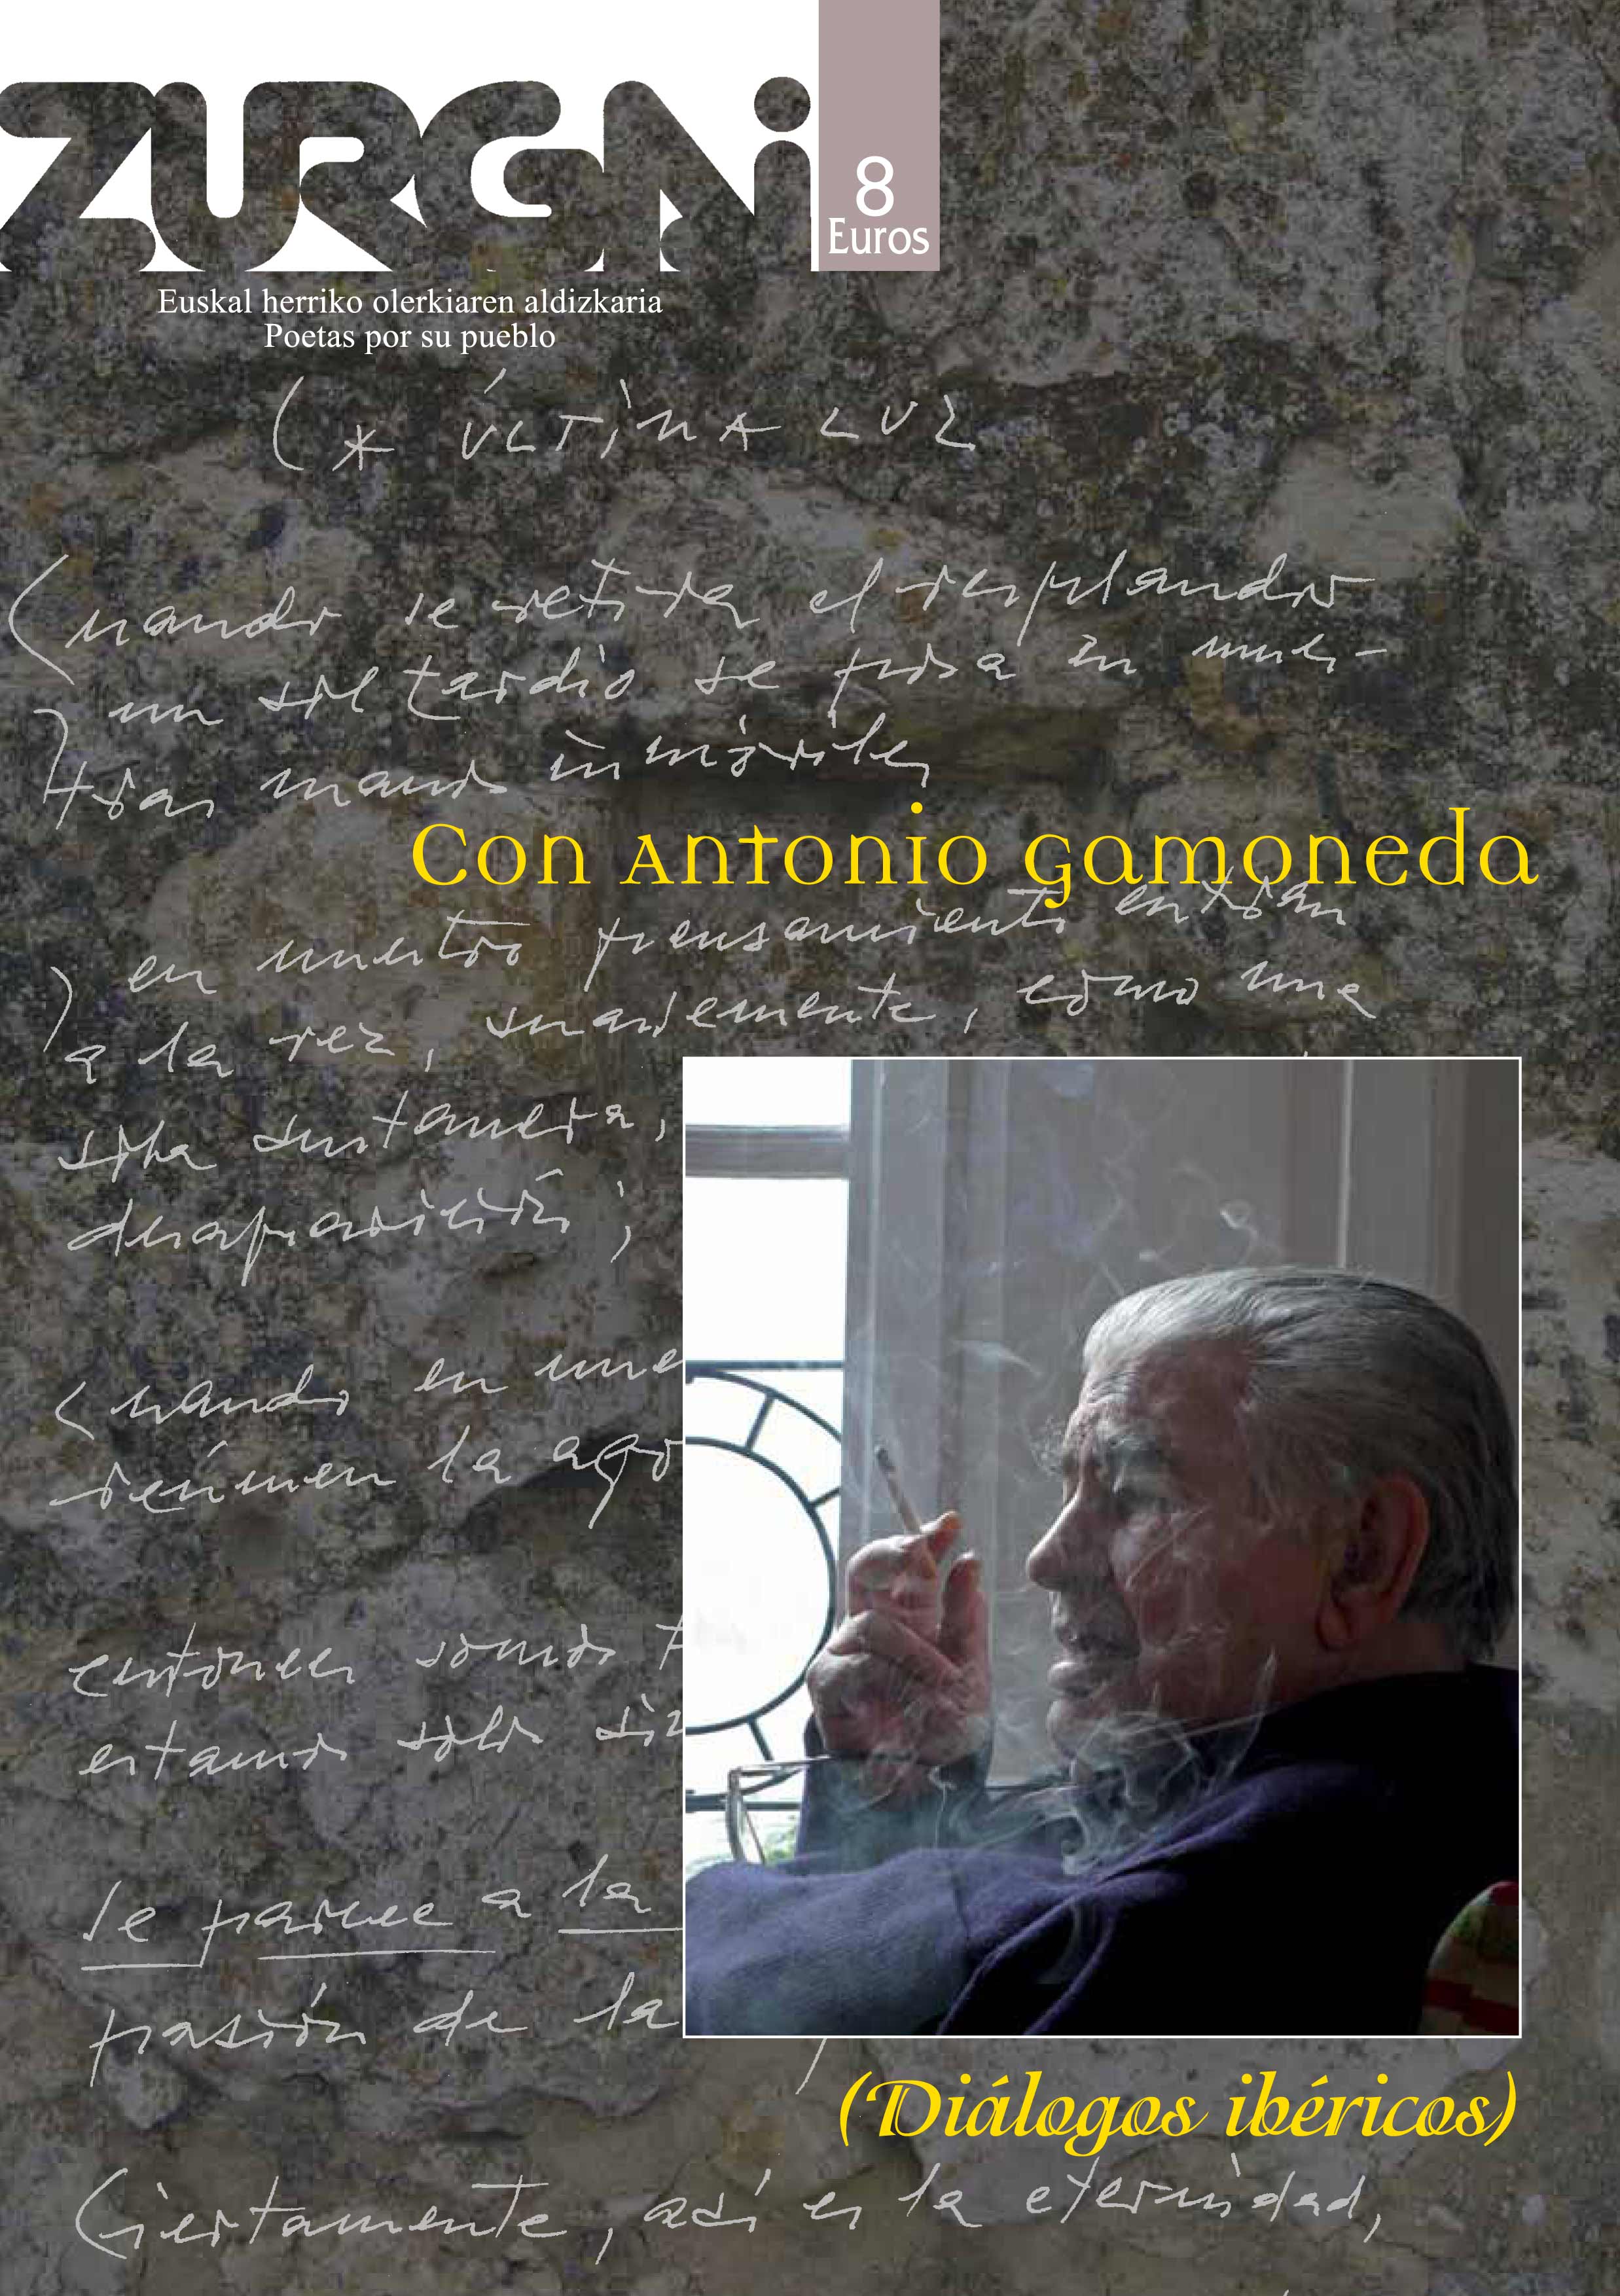 Portada de revista Con Antonio Gamoneda (Diálogos Ibéricos)